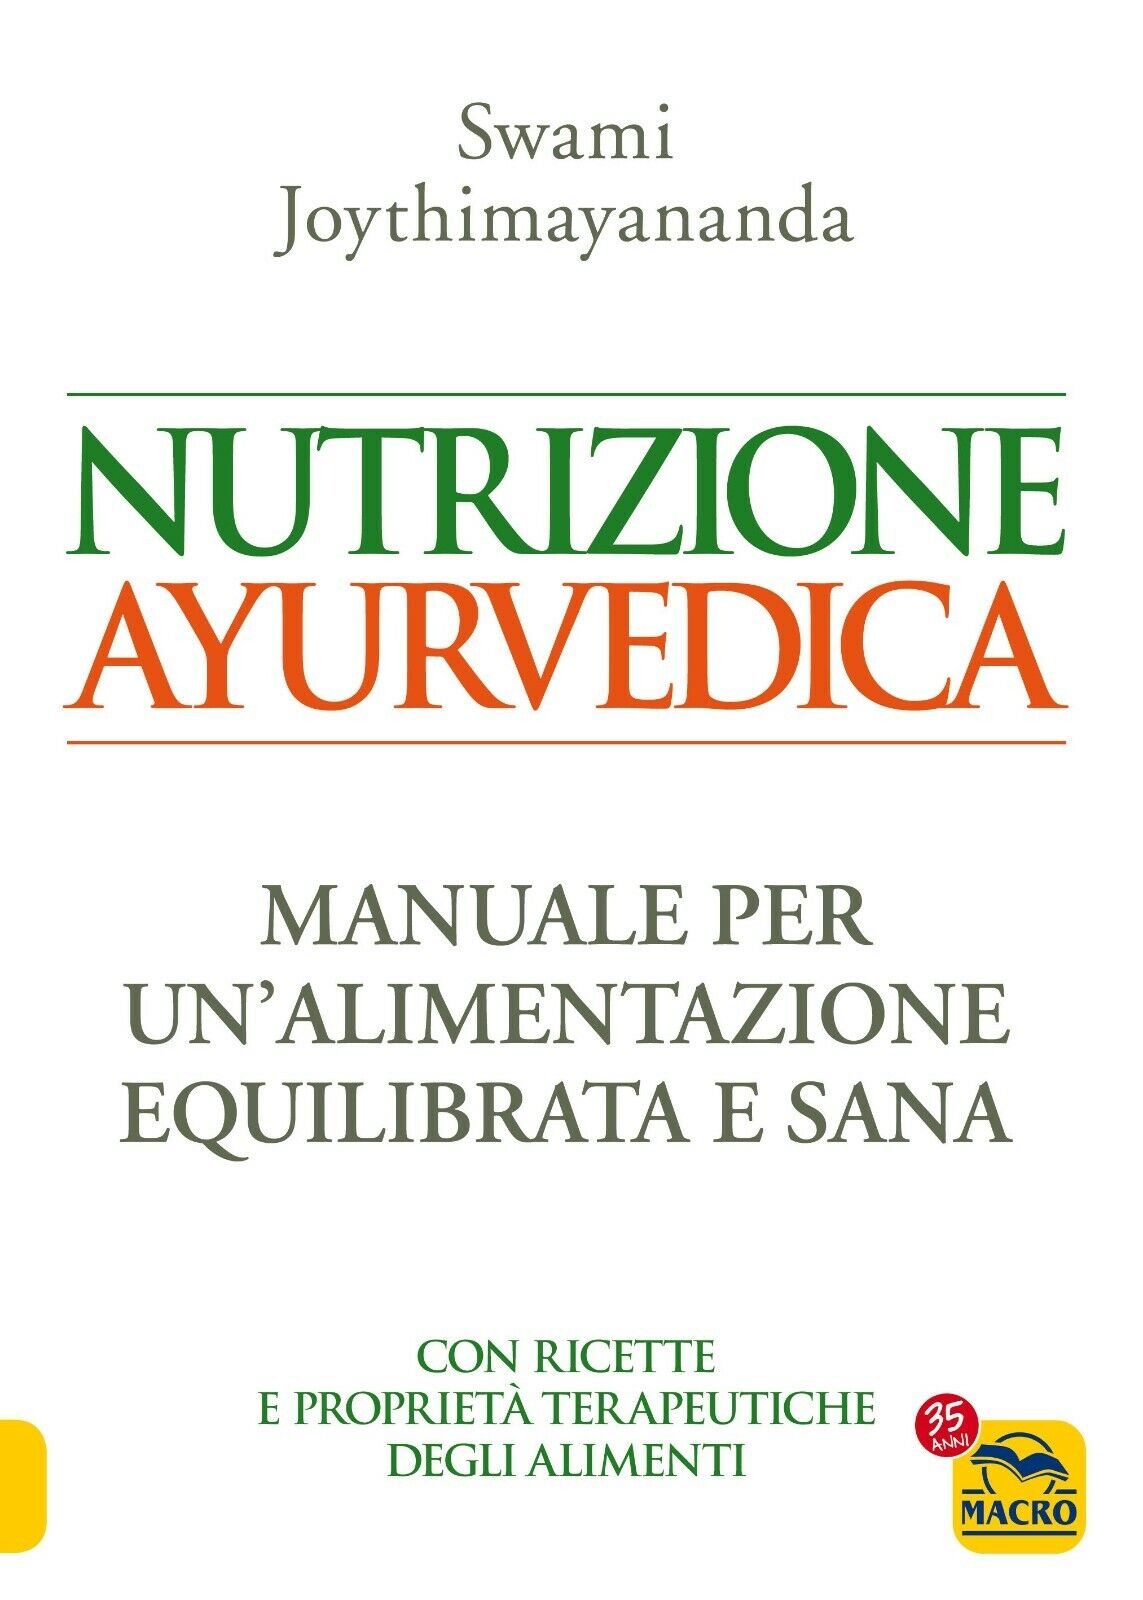 Nutrizione ayurvedica. Manuale per una nutrizione equilibrata e sana di Swami Jo libro usato